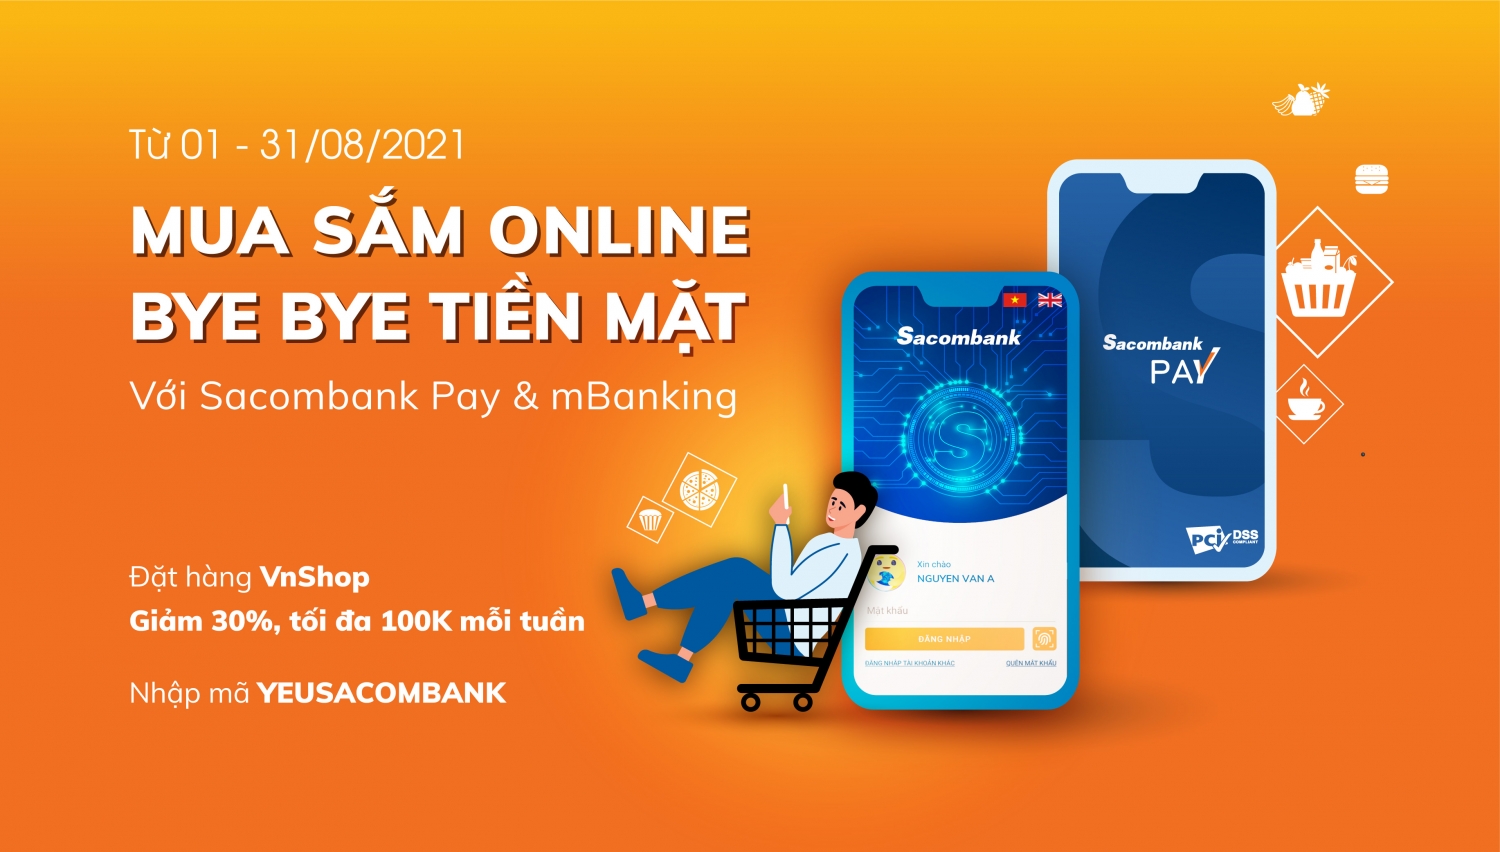 Tin nhanh ngân hàng ngày 1/8: “Mua sắm online - Bye bye tiền mặt” với Sacombank